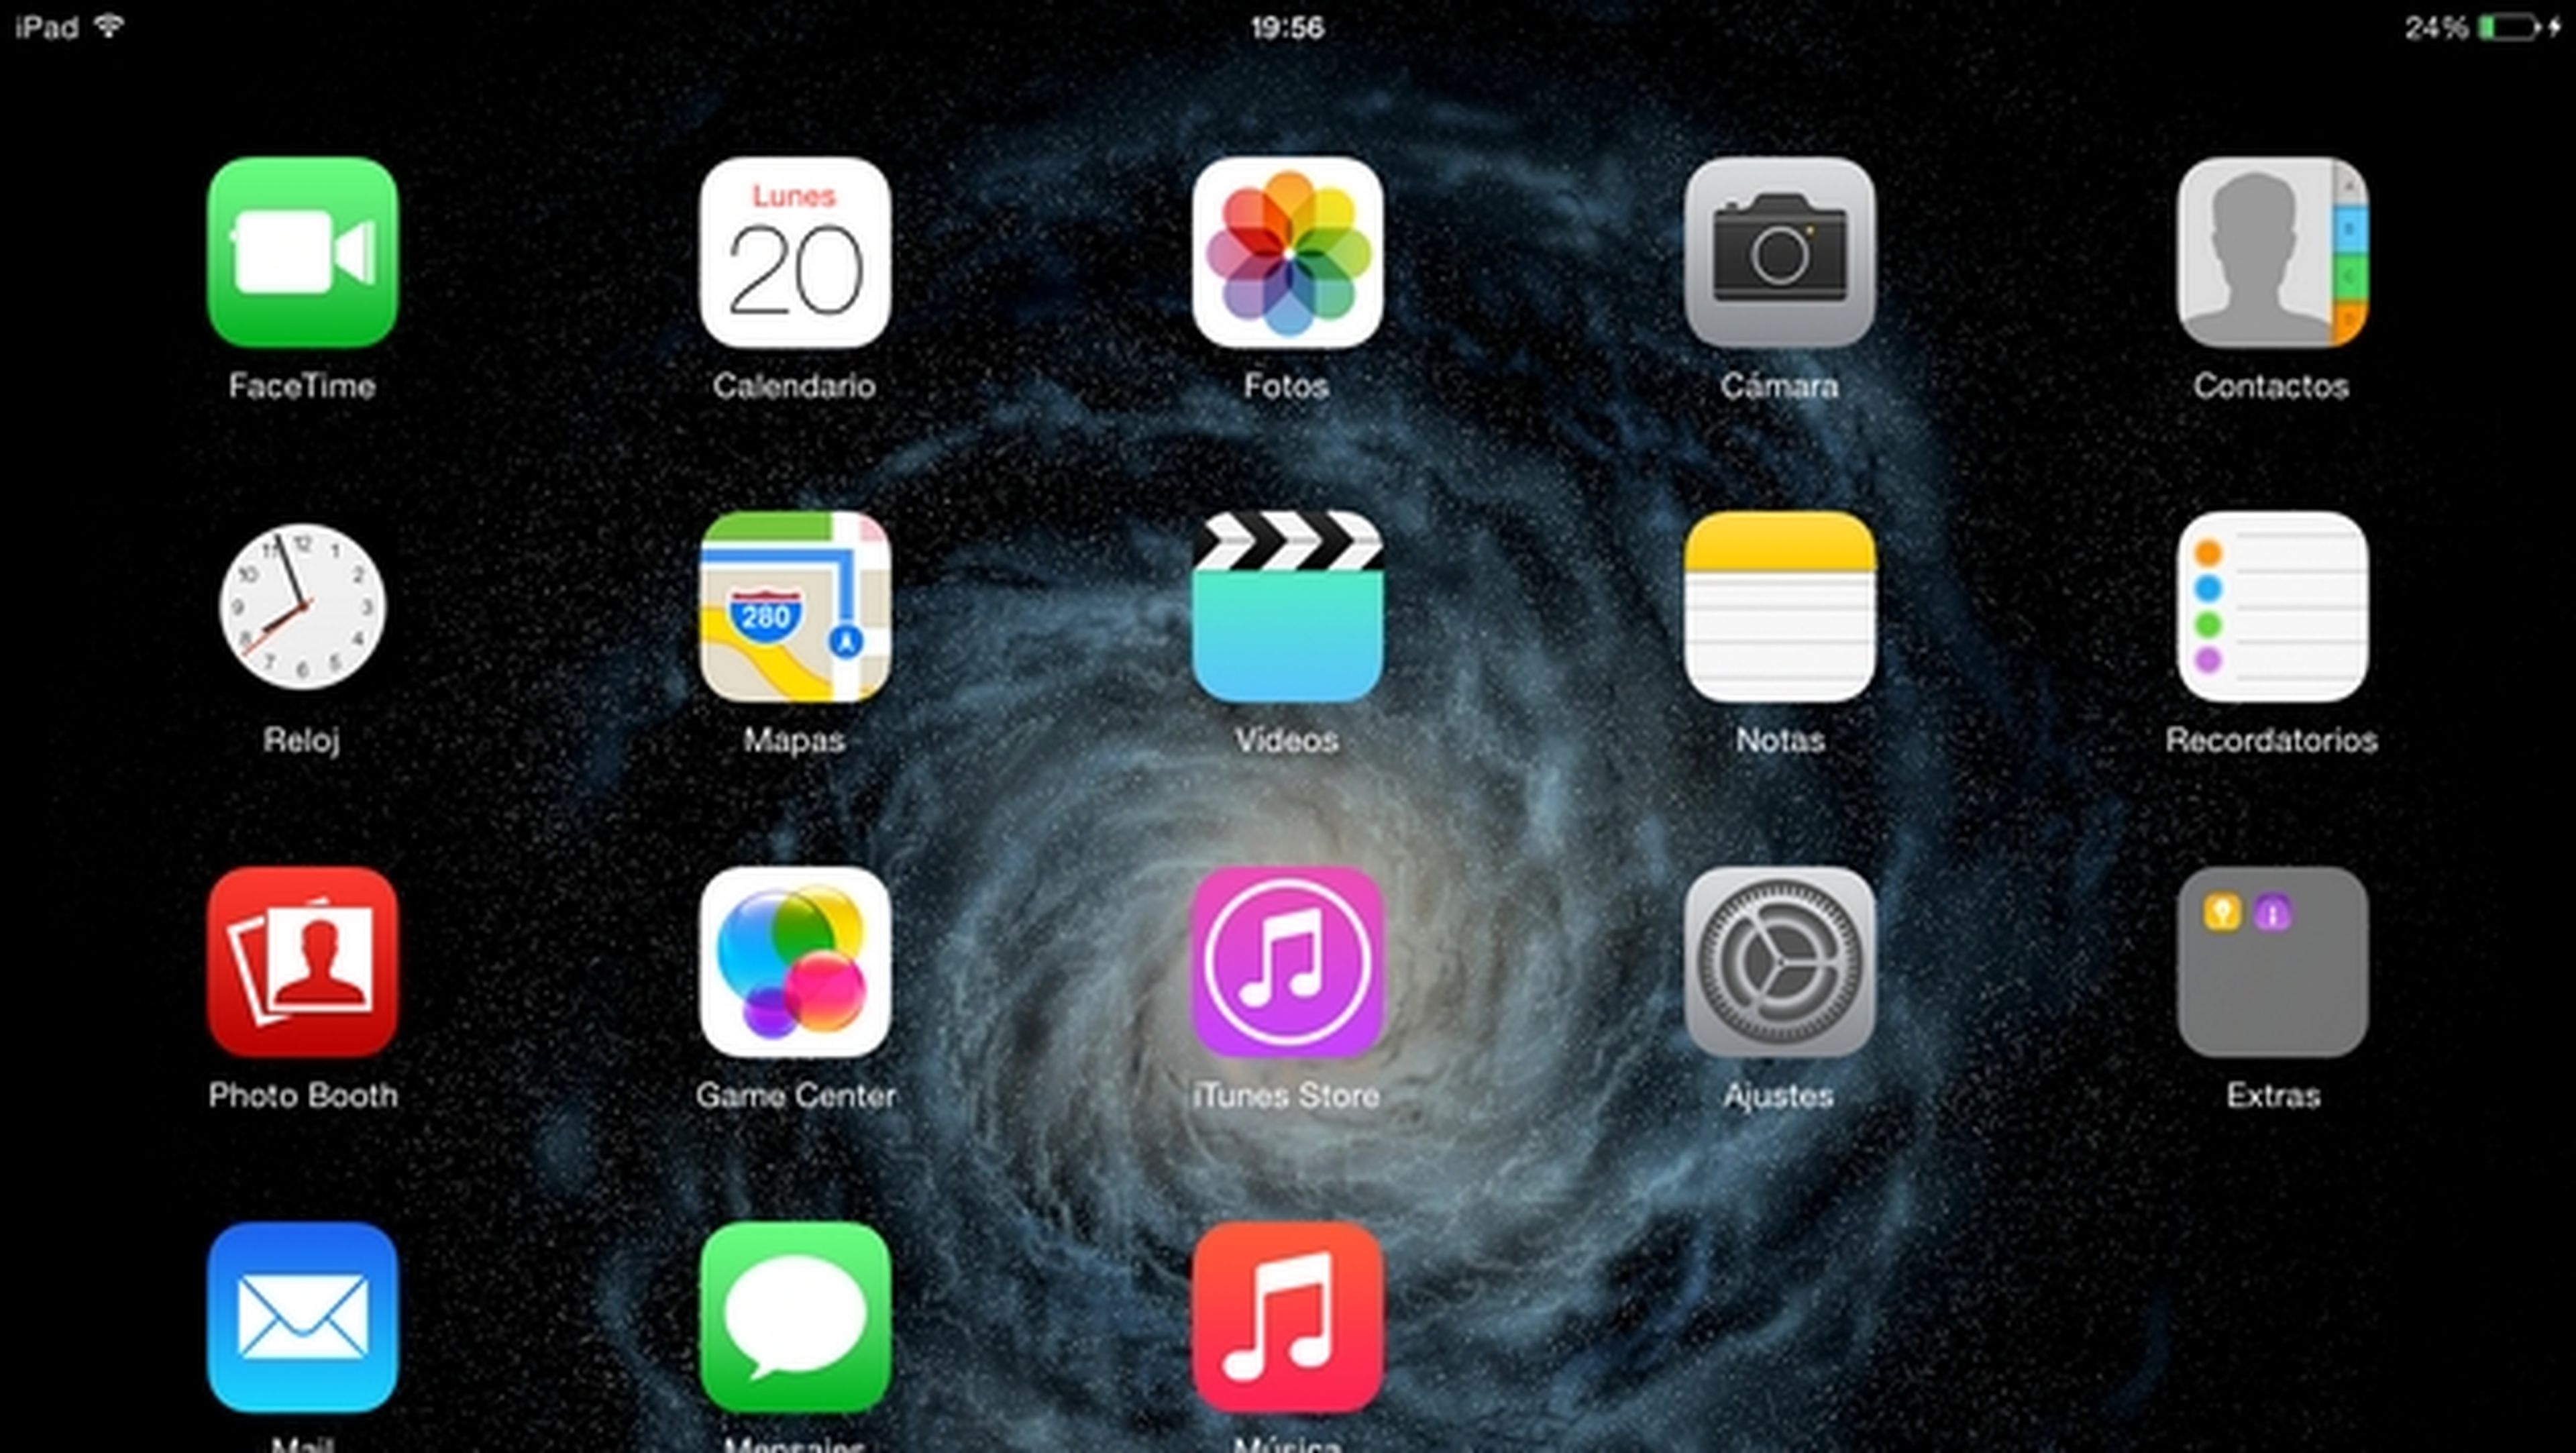 Actualización iOS 8.1 para iPhone, iPad y iPod Touch ya disponible para descargar en España.